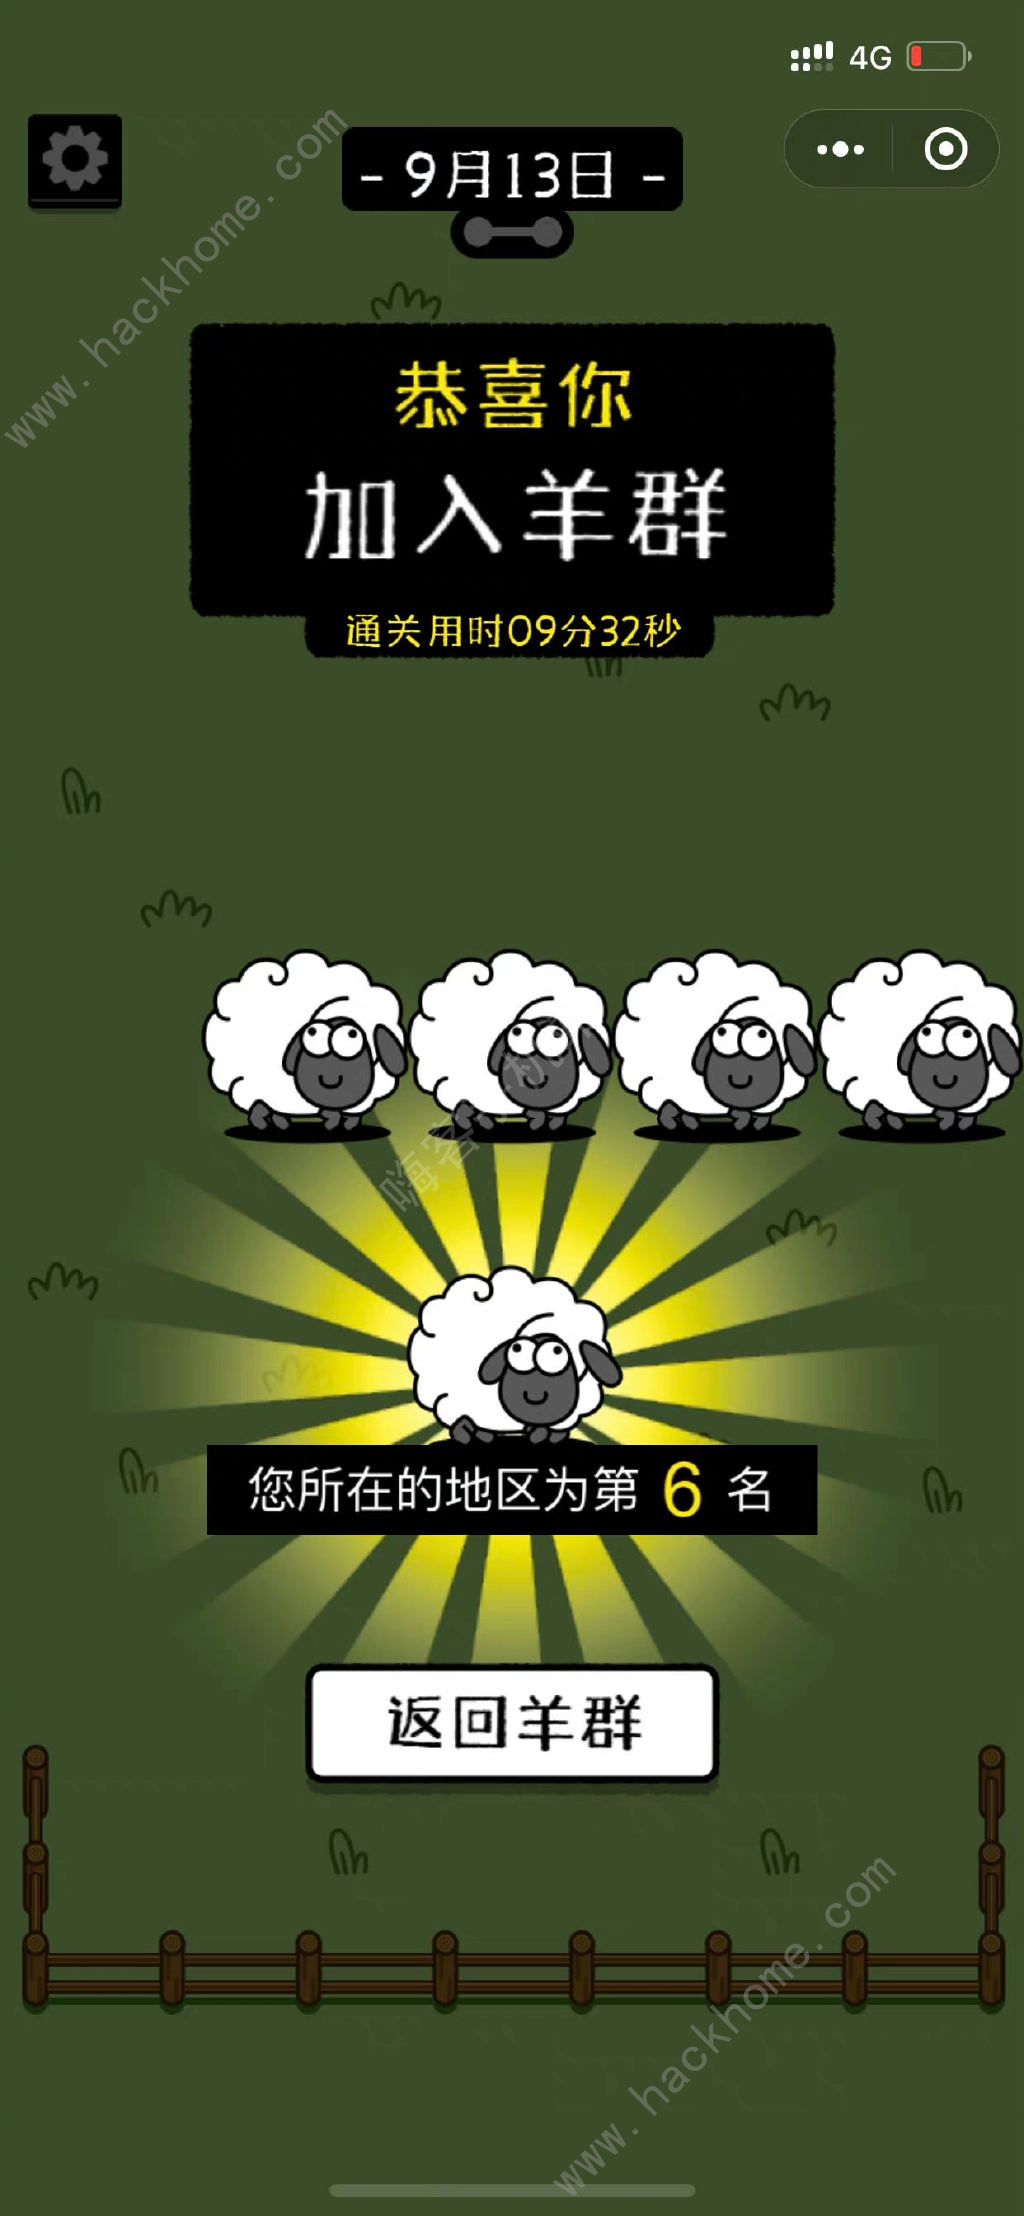 羊了个羊免广告获得道具小技巧_哔哩哔哩bilibili_技巧